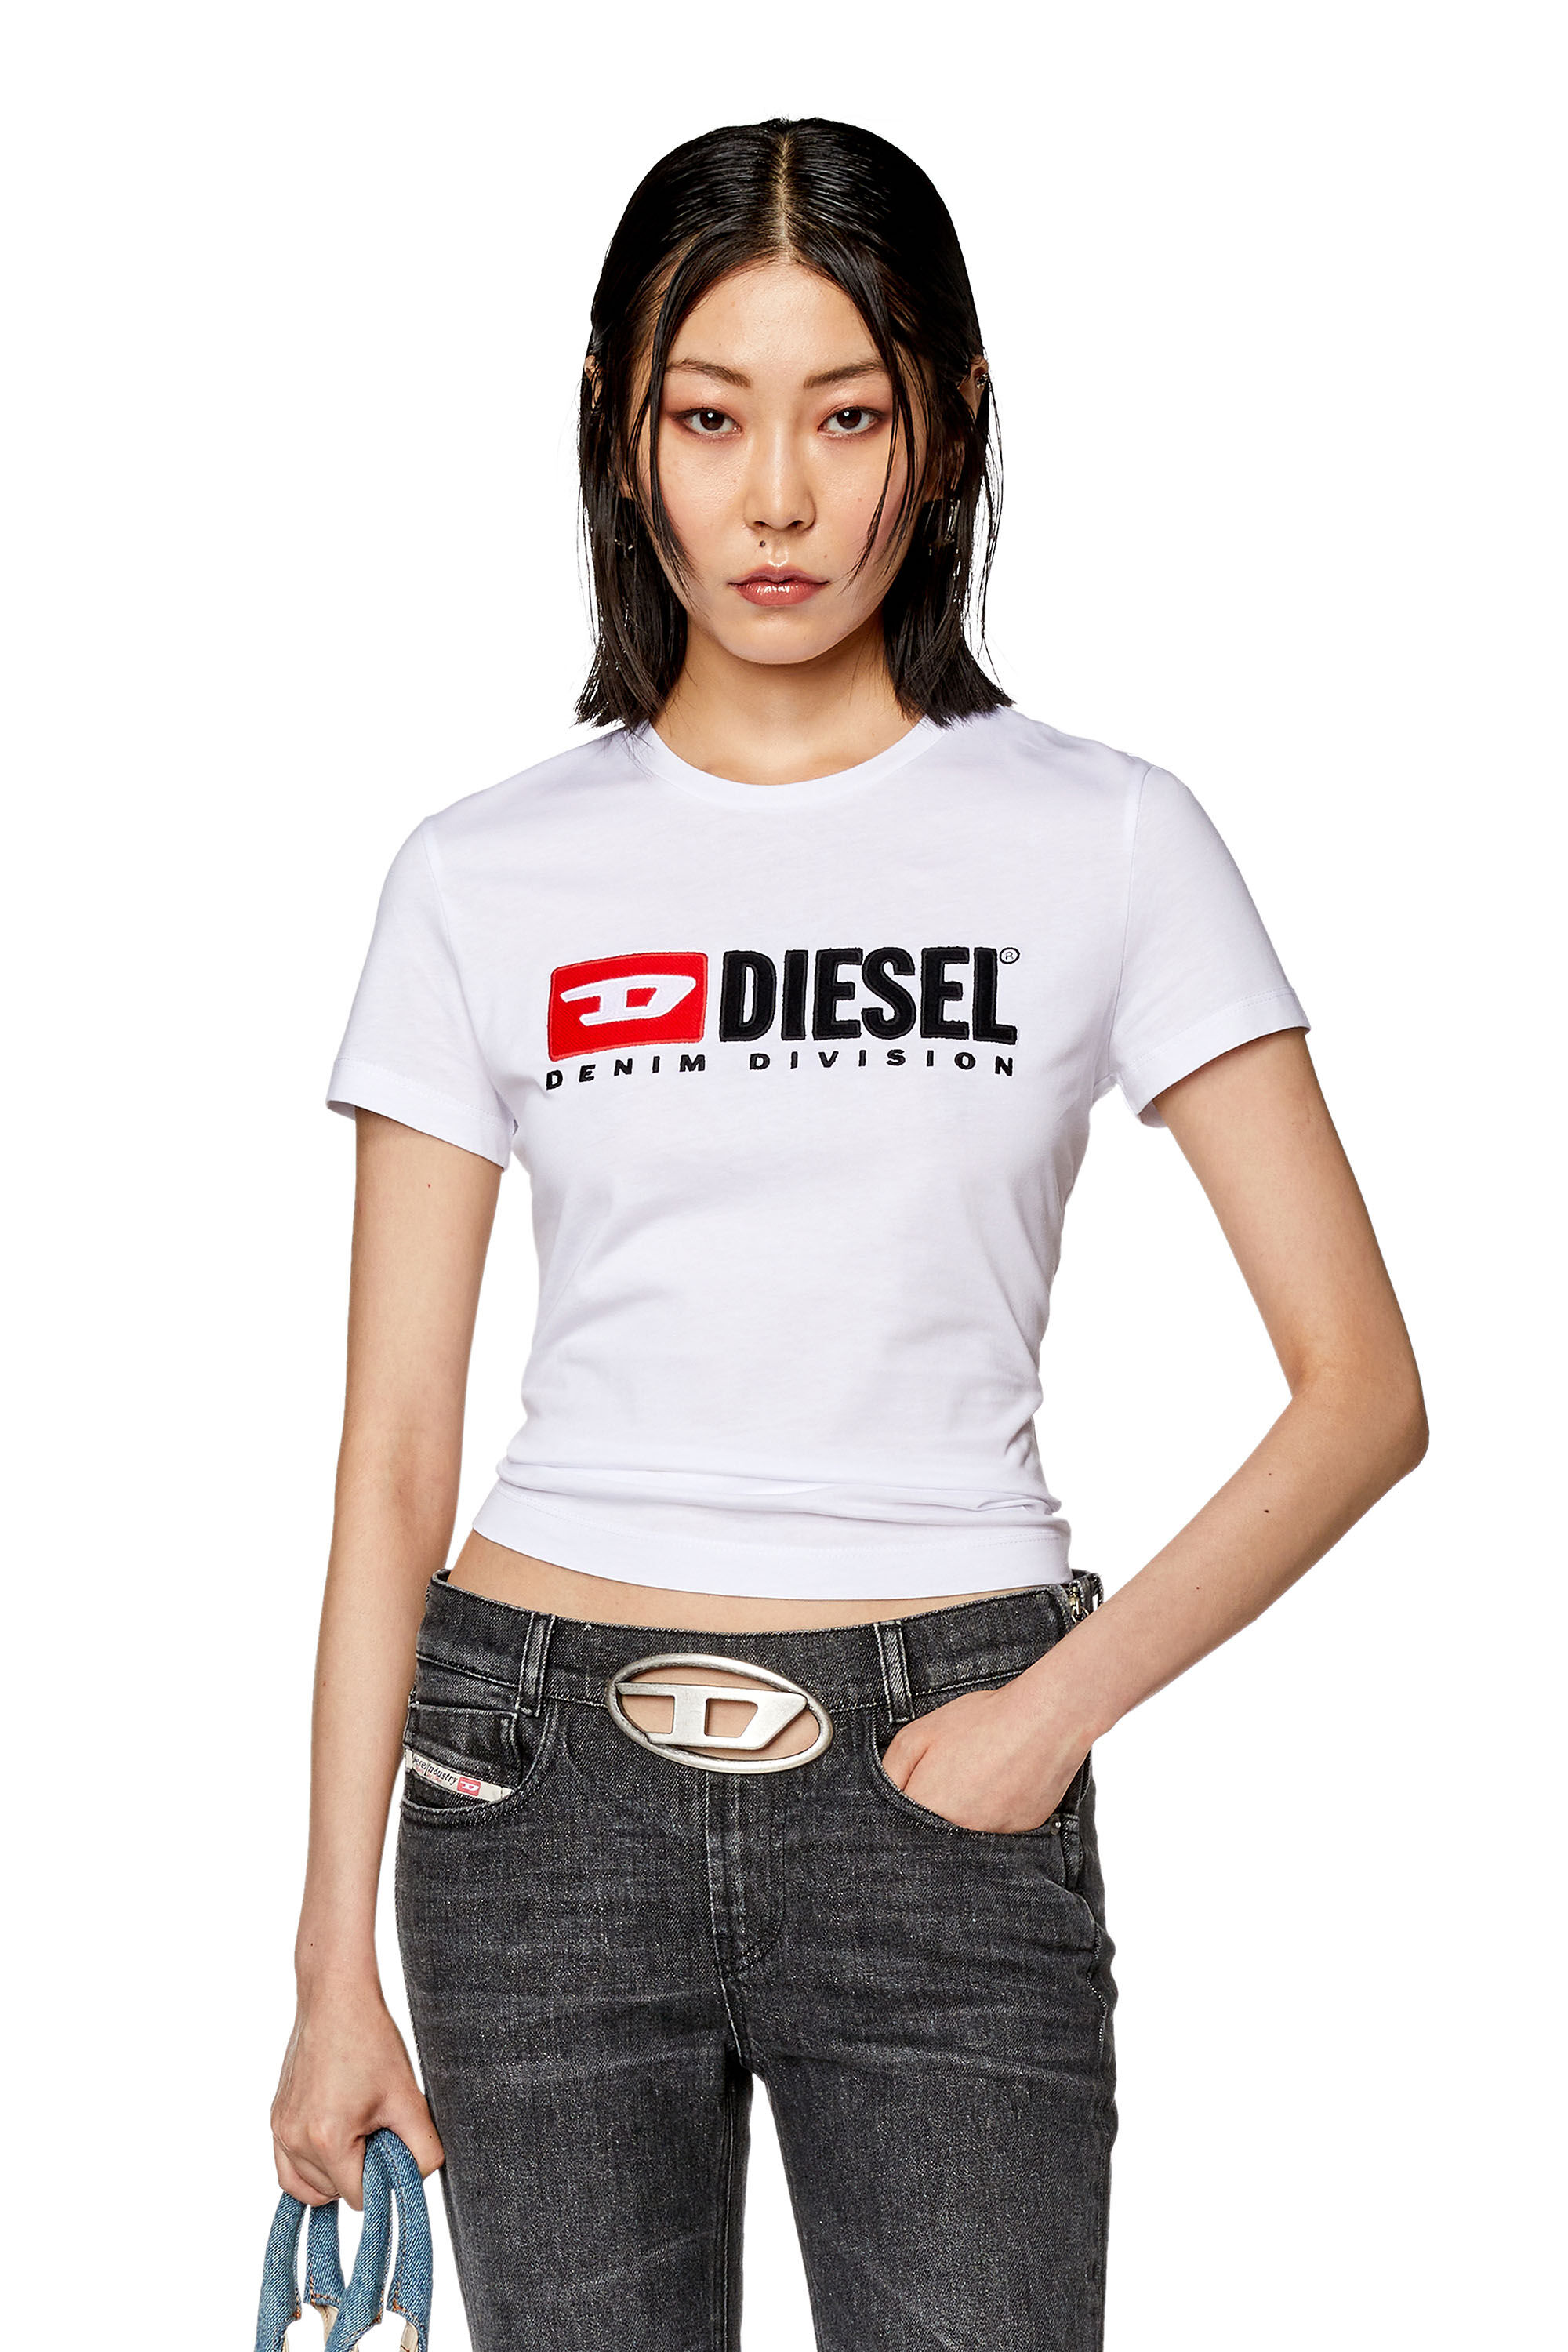 Diesel - T-SLI-DIV, White - Image 3